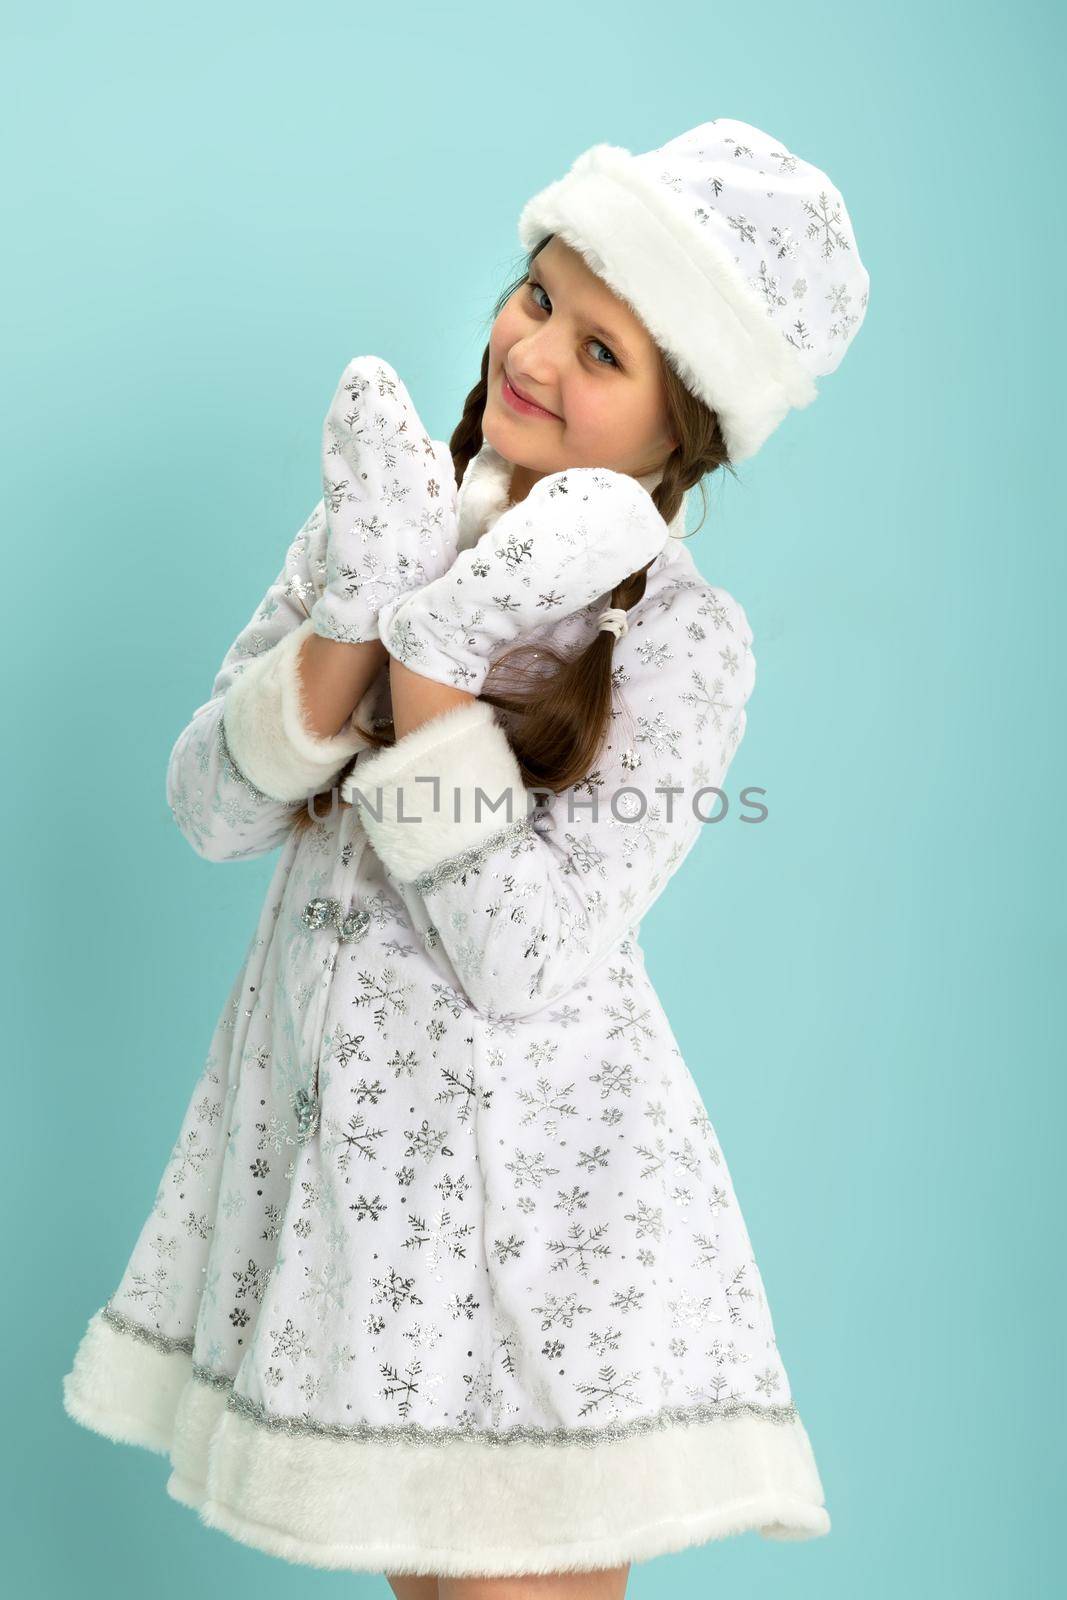 Beautiful girl in snow maiden costume by kolesnikov_studio